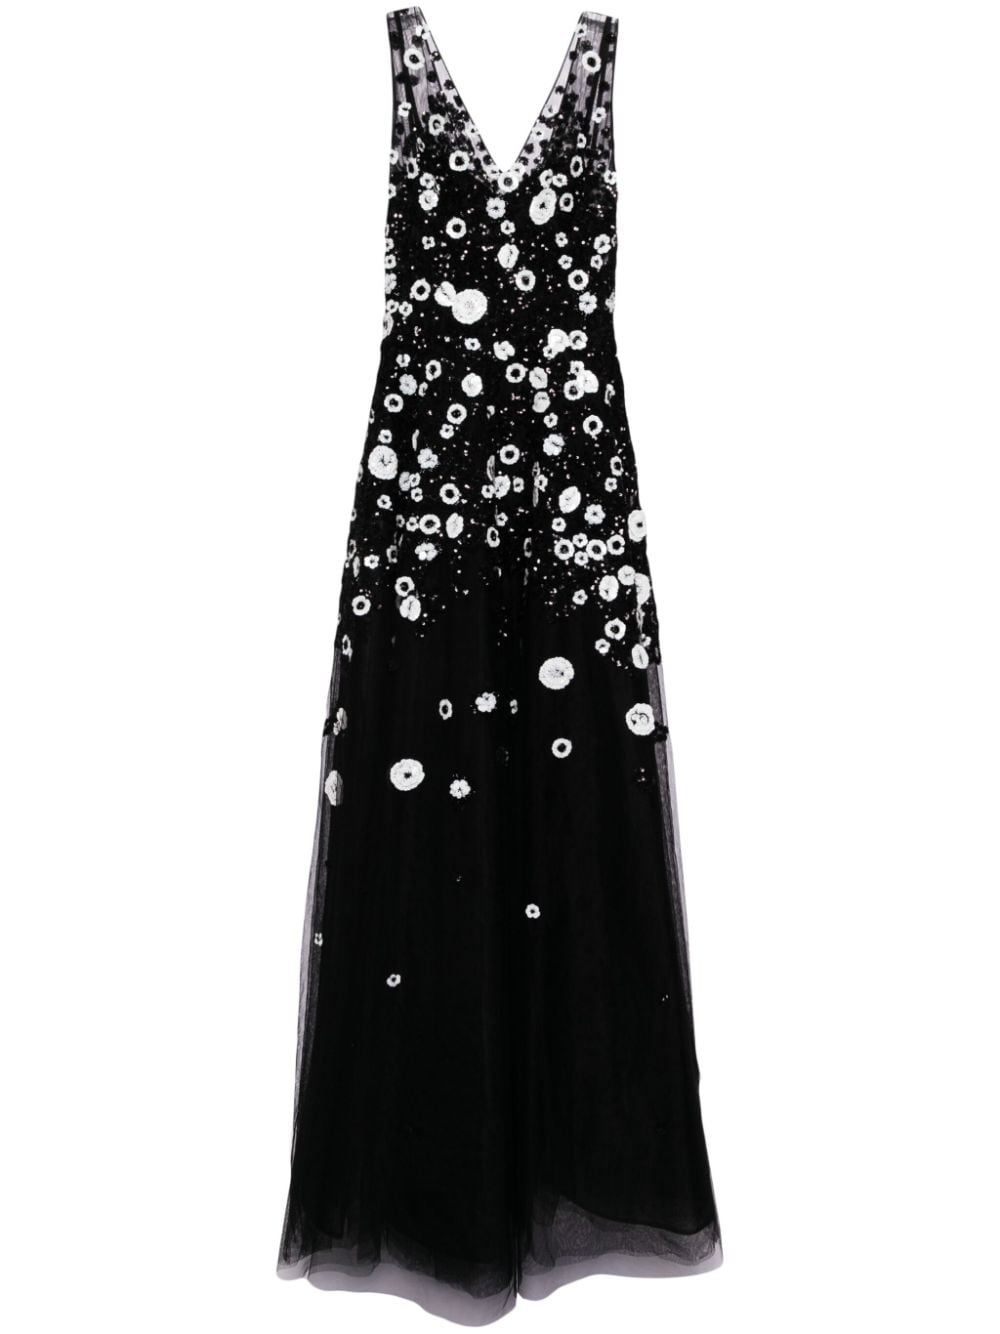 Saiid Kobeisy bead-embellished tulle gown - Black von Saiid Kobeisy